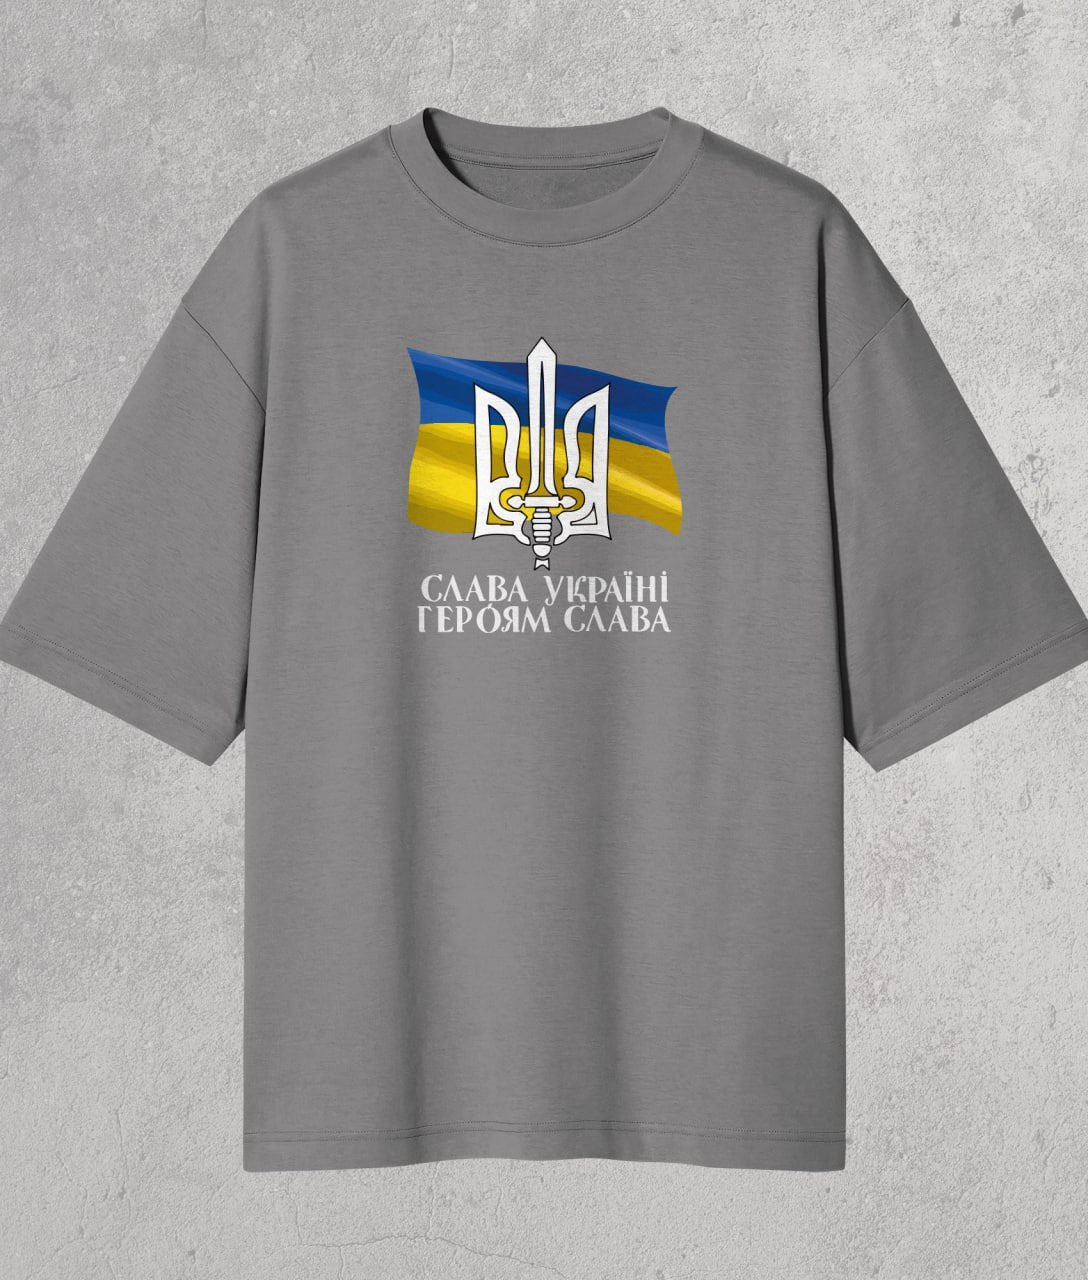 Oversize T-shirt Glory to Ukraine, Glory to Heroes